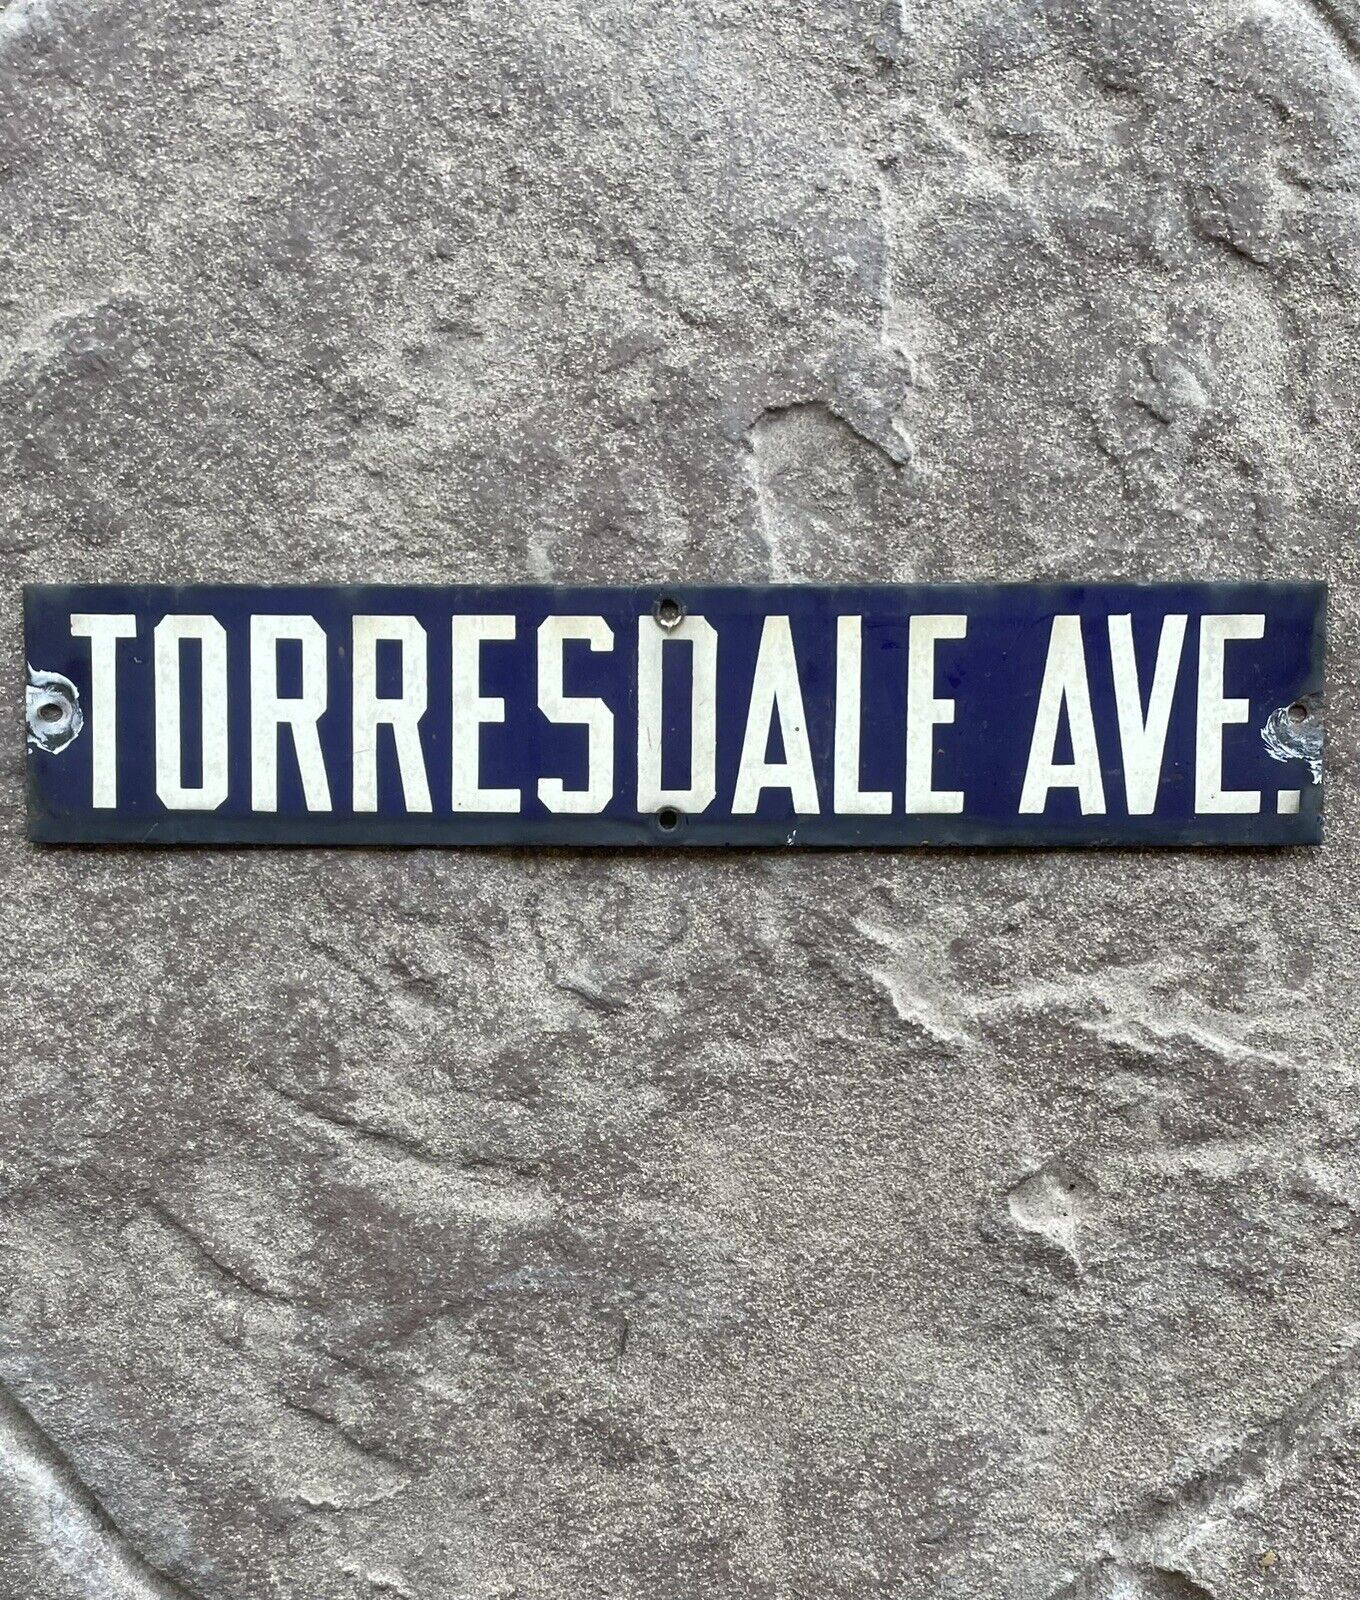 Vintage Blue Porcelain Street Sign “Torresdale Ave” Historical Phila Sign R